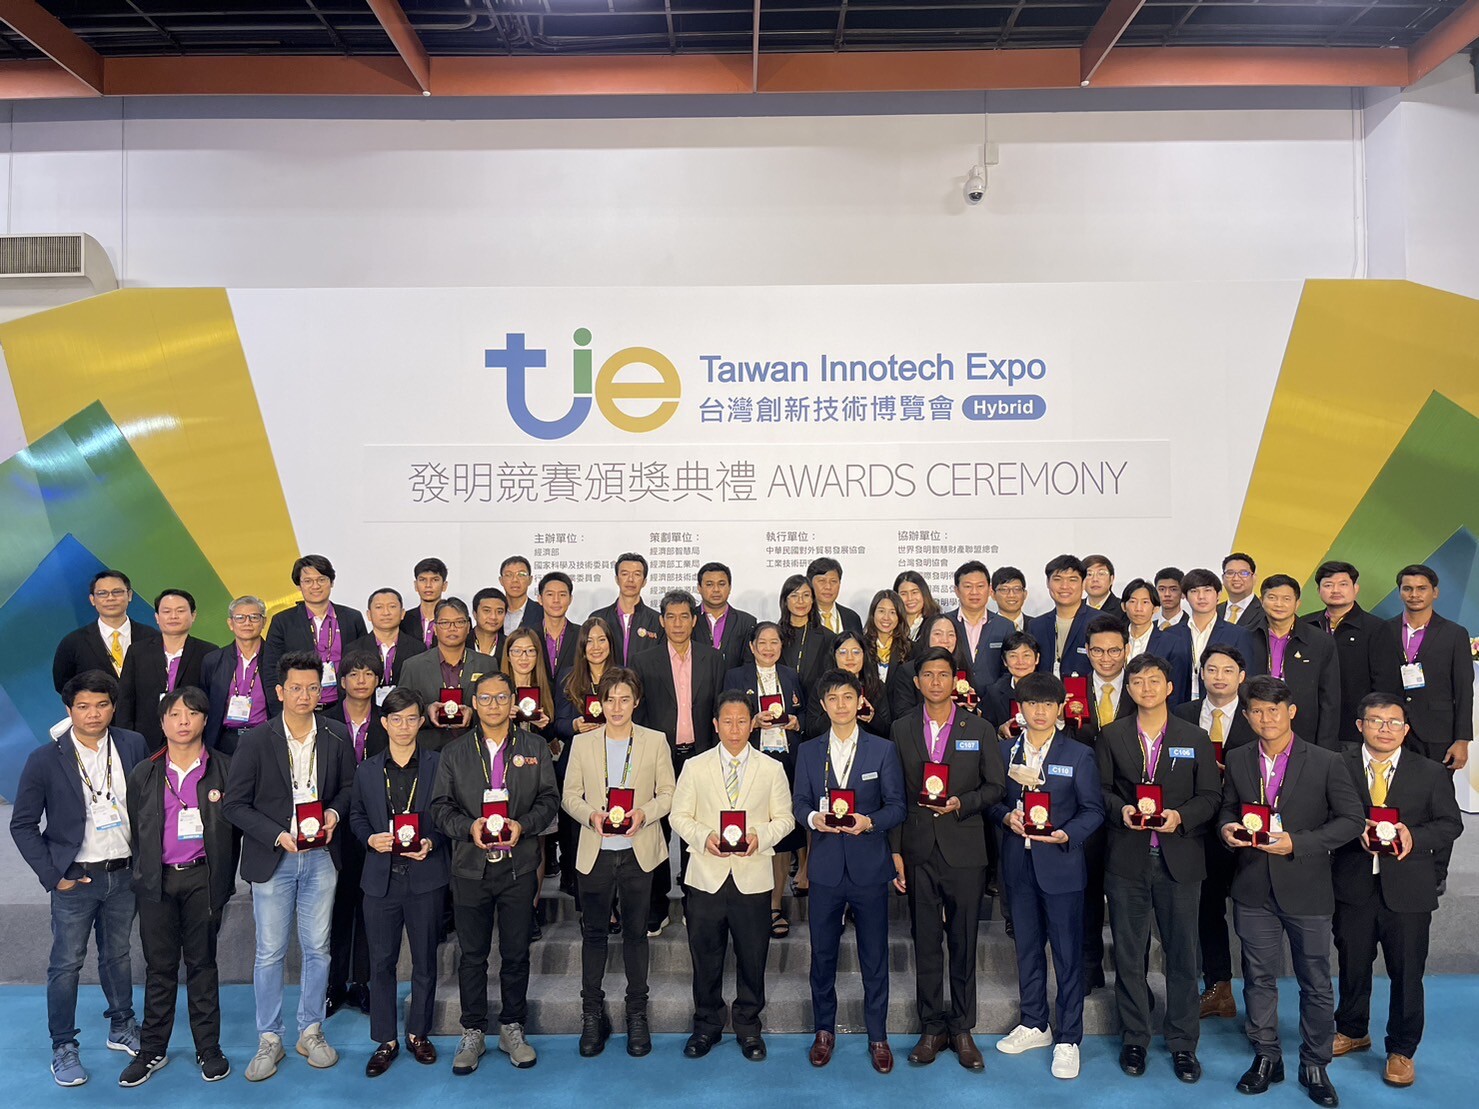 วช. นำคณะนักประดิษฐ์ นักวิจัยไทย คว้ารางวัลจากการประกวดสิ่งประดิษฐ์และนวัตกรรมระดับนานาชาติ จากเวที "Taiwan Innotech Expo 2022" (TIE 2022)